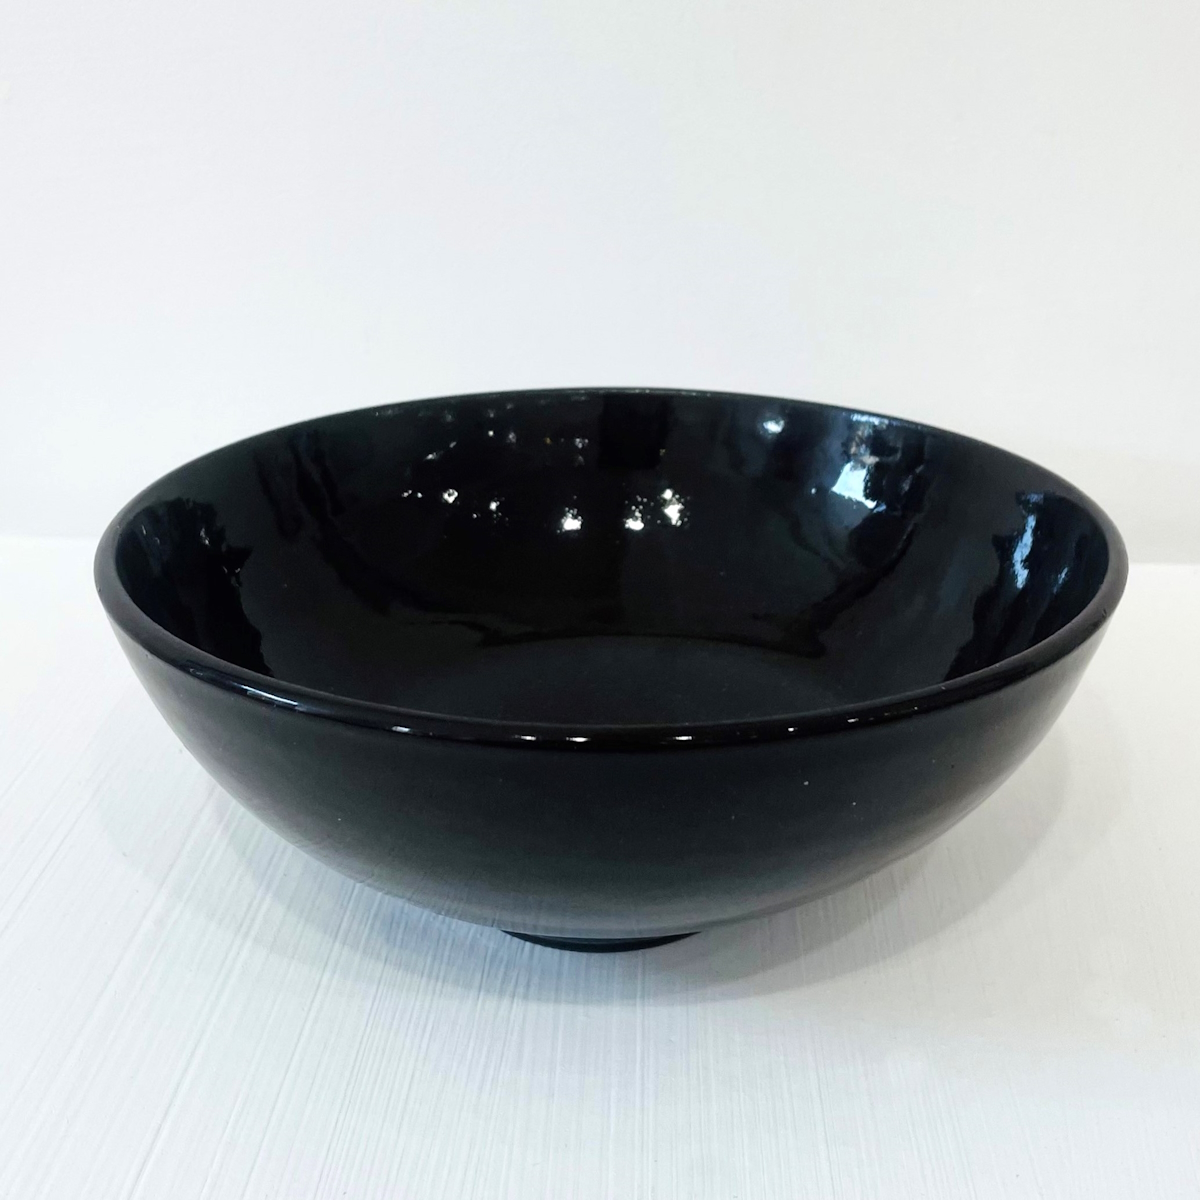 'Large Black Porcelain Bowl' by artist Robert Hunter